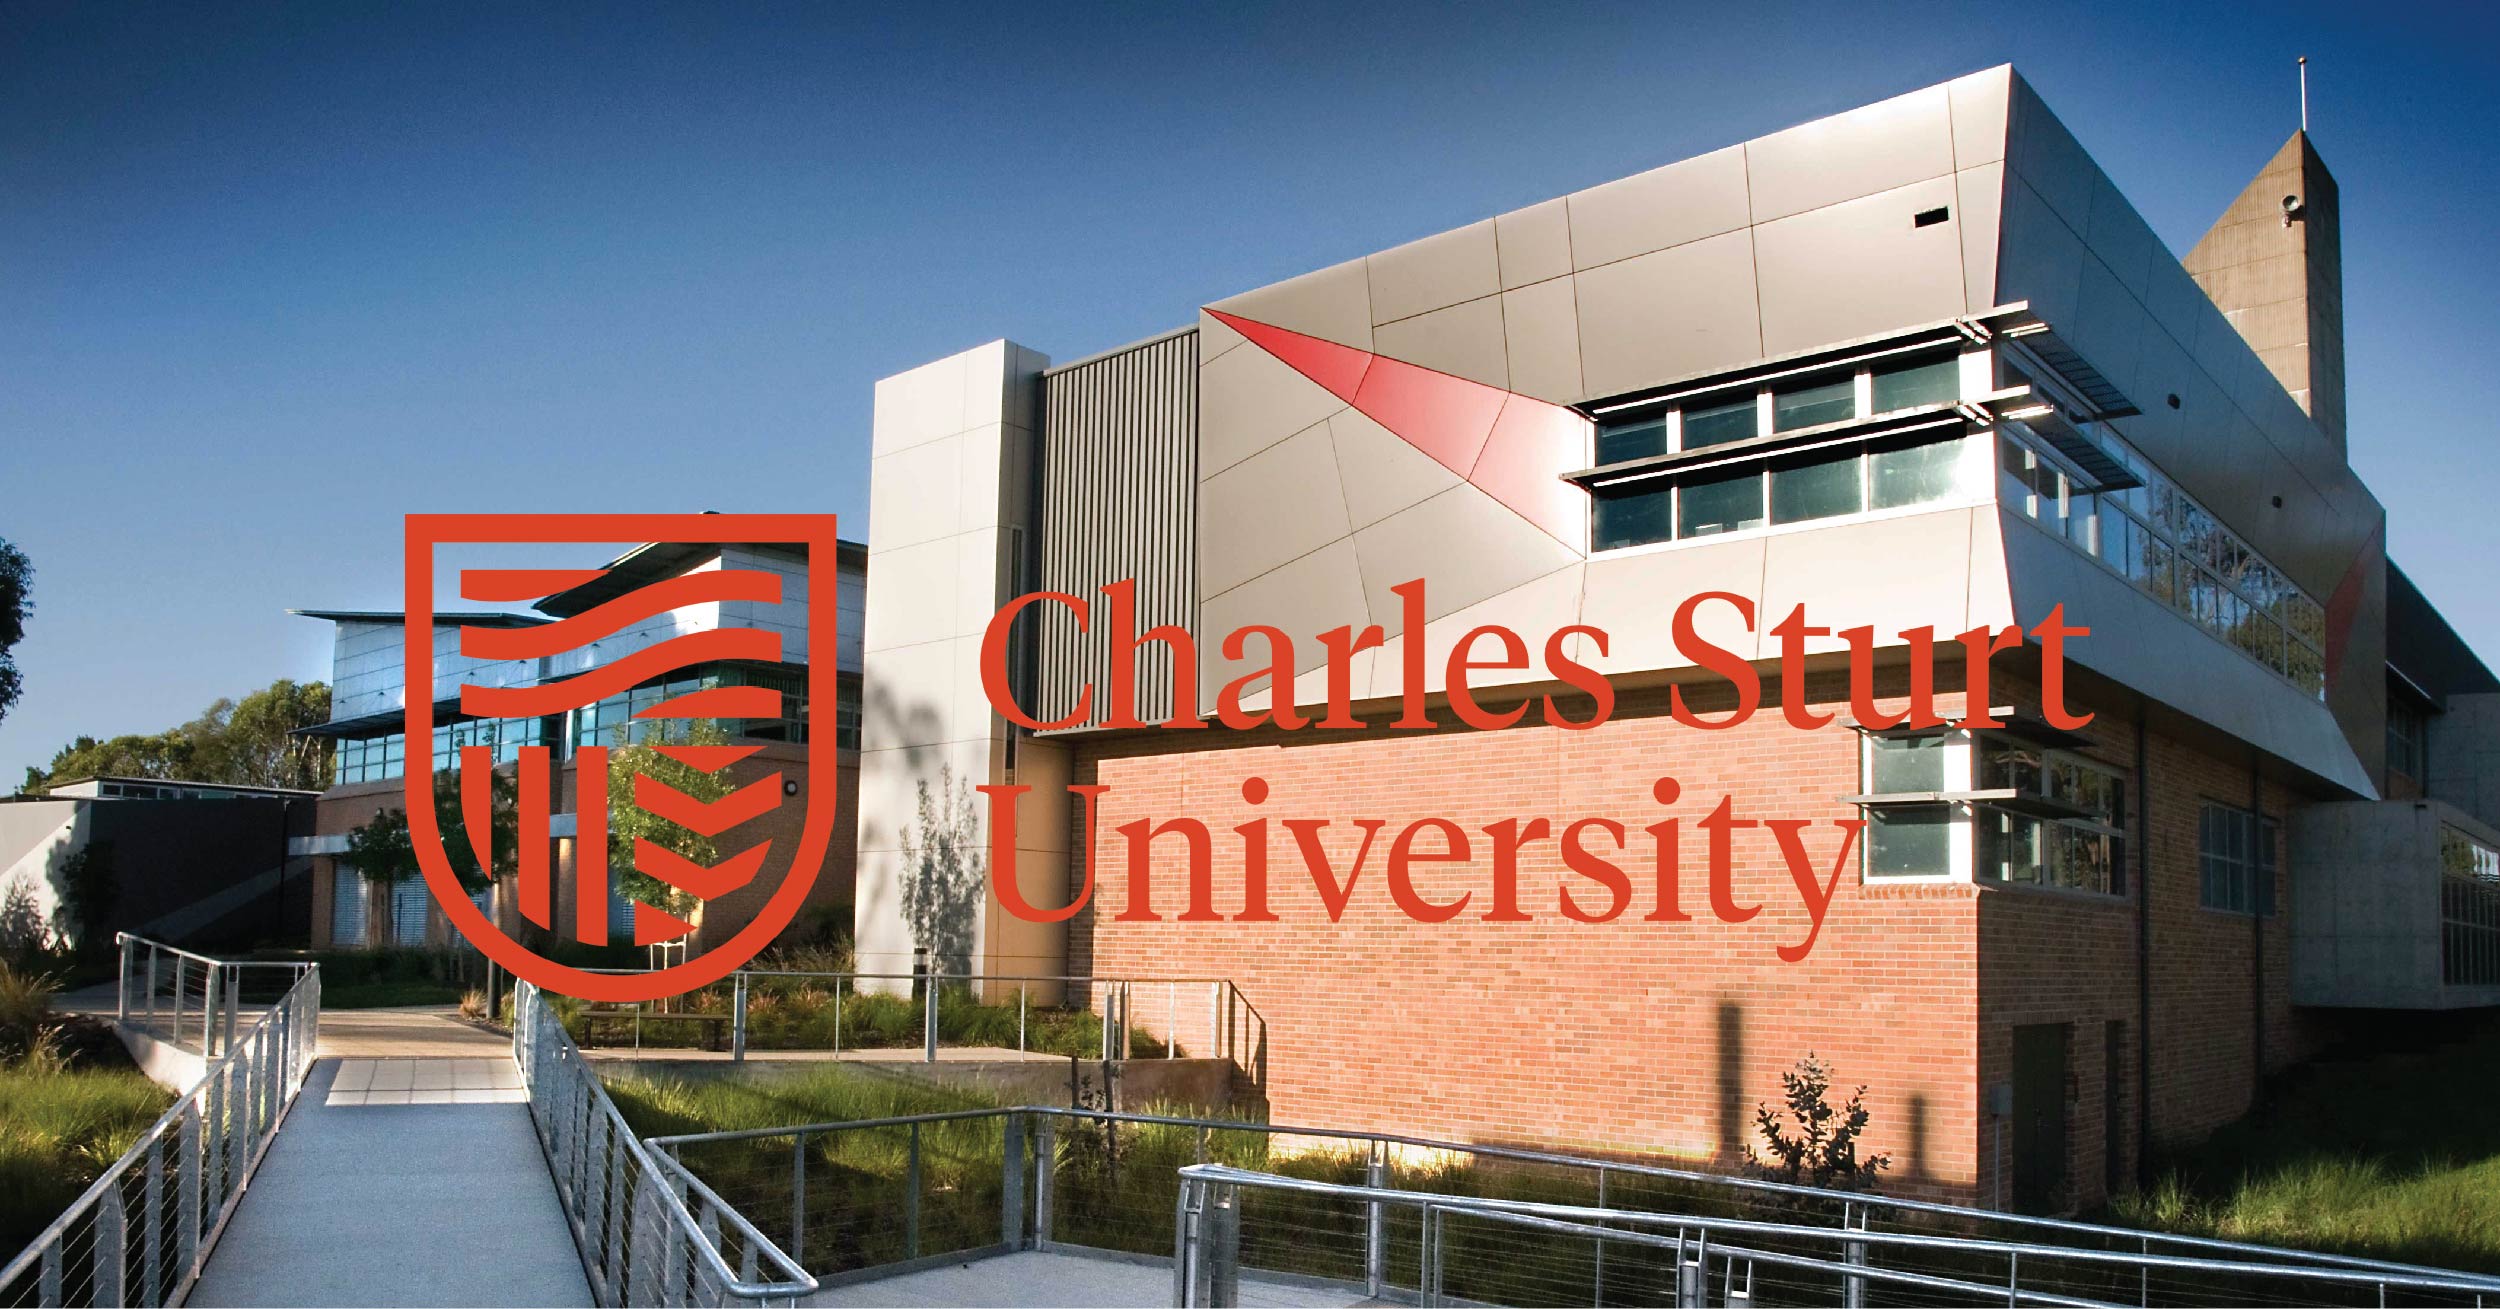 Học bổng cùng gói hỗ trợ Covid-19 từ Charles Sturt University lên đến 10,800AUD